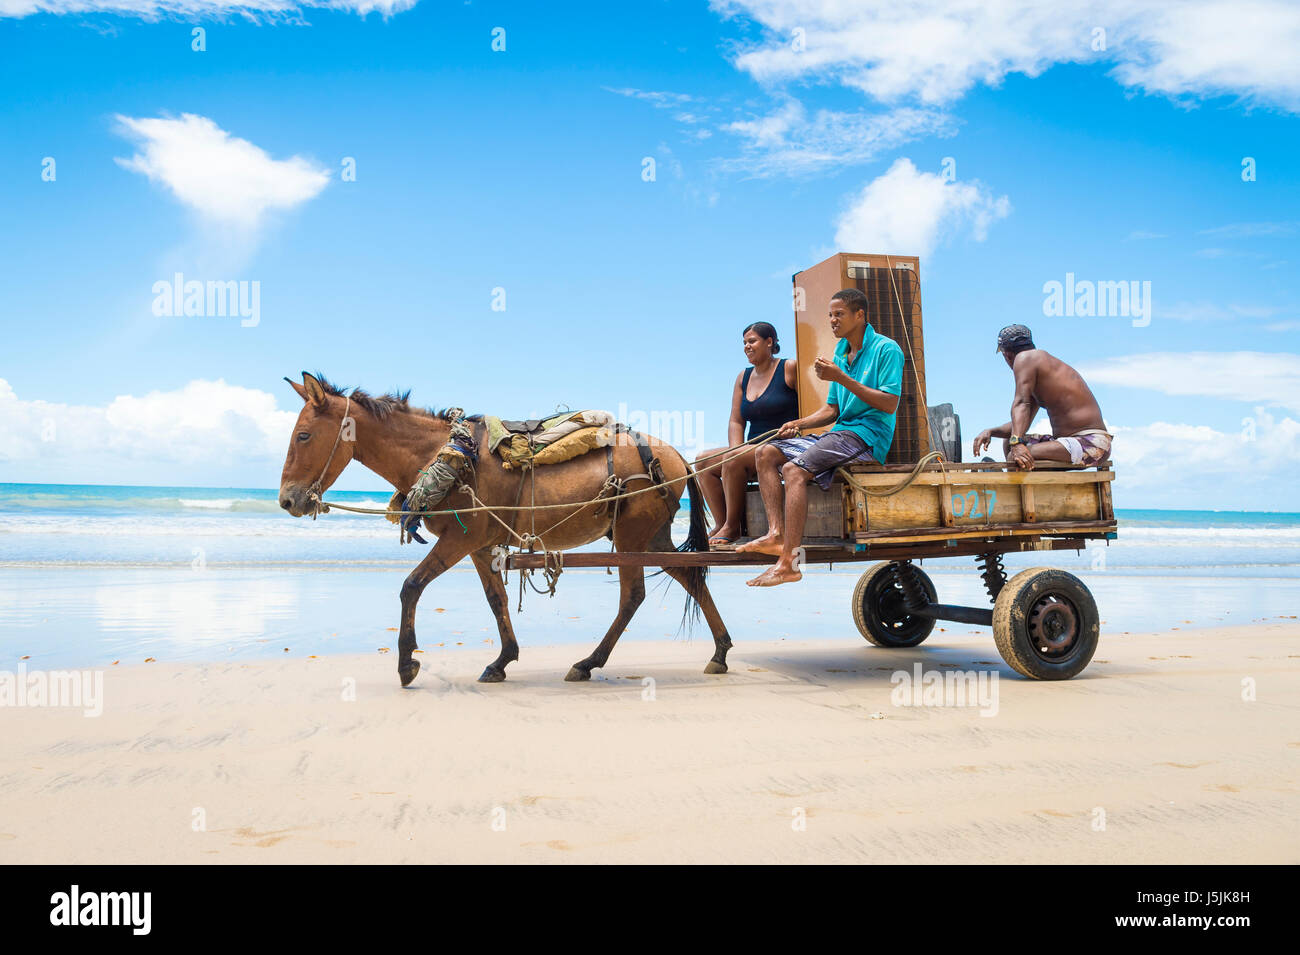 BAHIA, Brasilien - 11. März 2017: Ein Maultier zieht einen Karren, beladen mit einem Kühlschrank und zwei Personen reisen entlang des Ufers des nordöstlichen Strand. Stockfoto